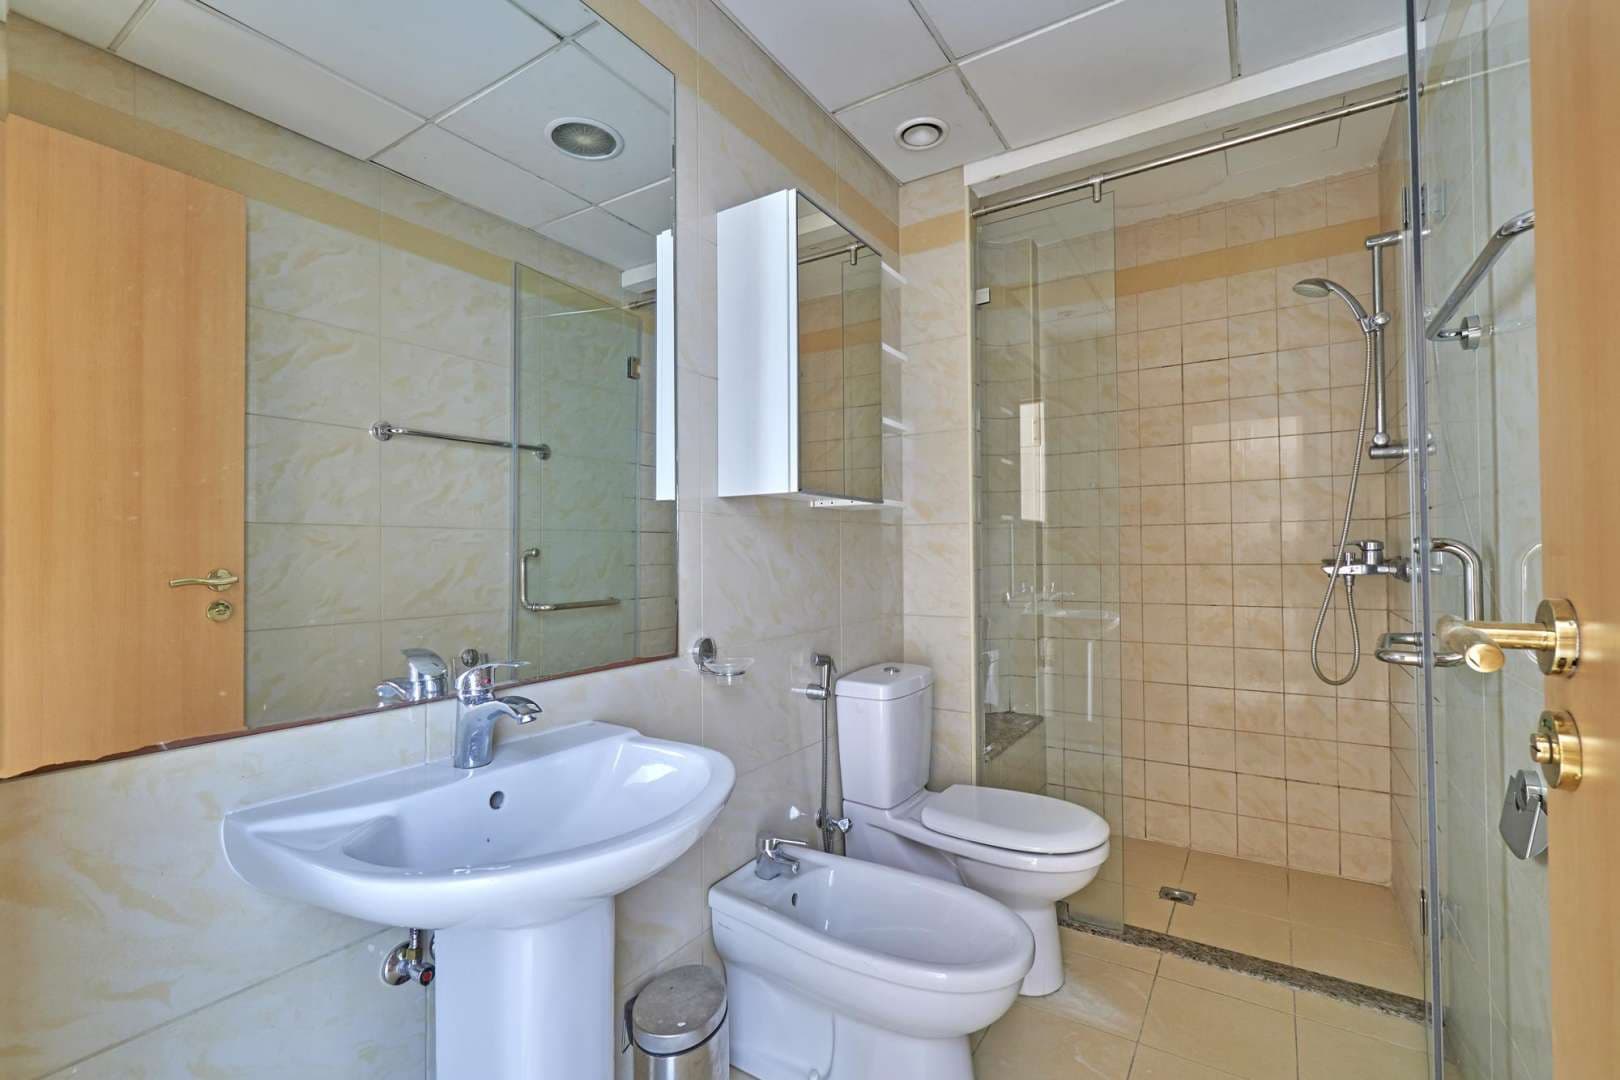 4 Bedroom Apartment For Rent Marina Quay West Lp05531 F33dba543b7dc00.jpg